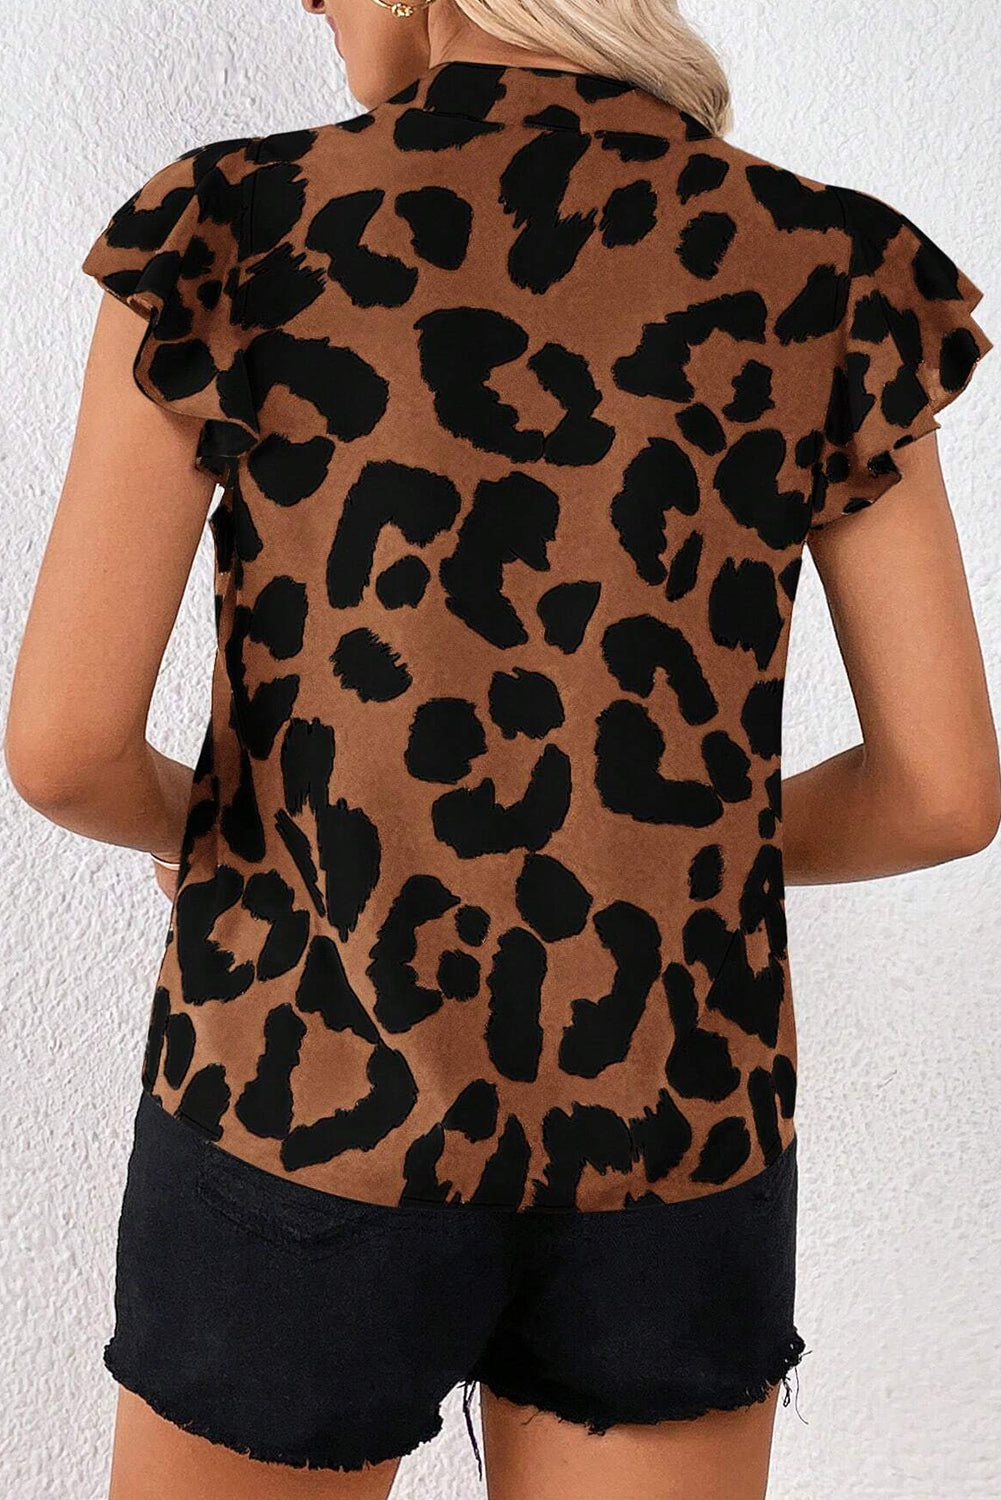 Braune Bluse mit gerüschtem Leopardenmuster und flatternden Ärmeln und geschlitztem Ausschnitt